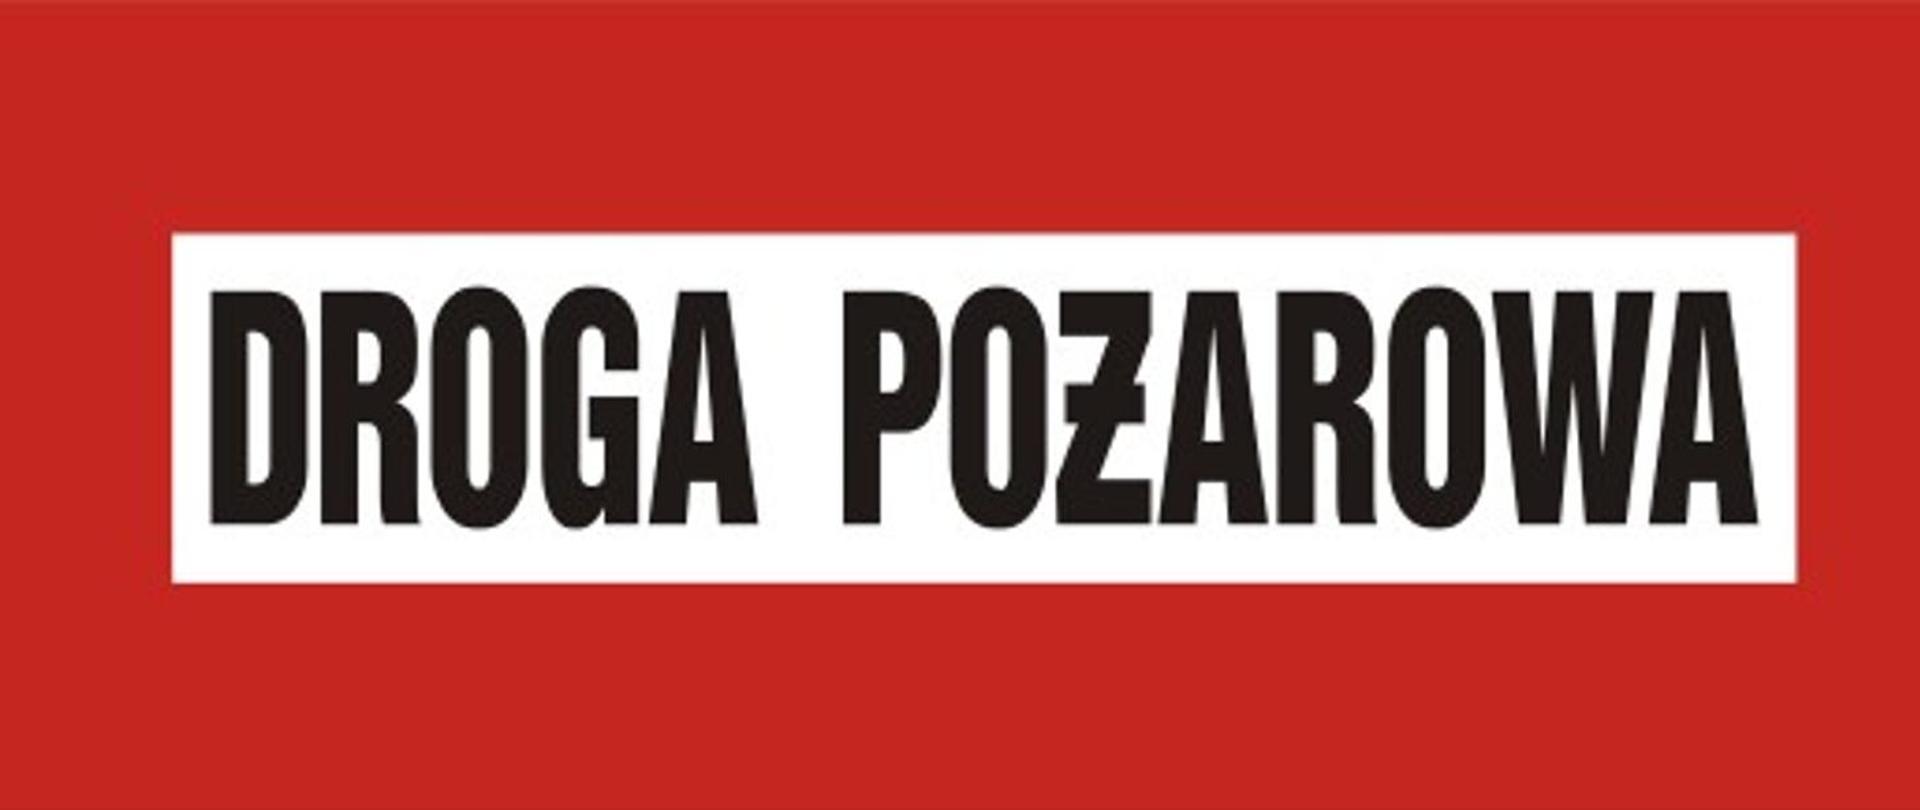 Zdjęcie przedstawia znak pochodzący z Polskiej Normy służący do oznaczania dróg pożarowych